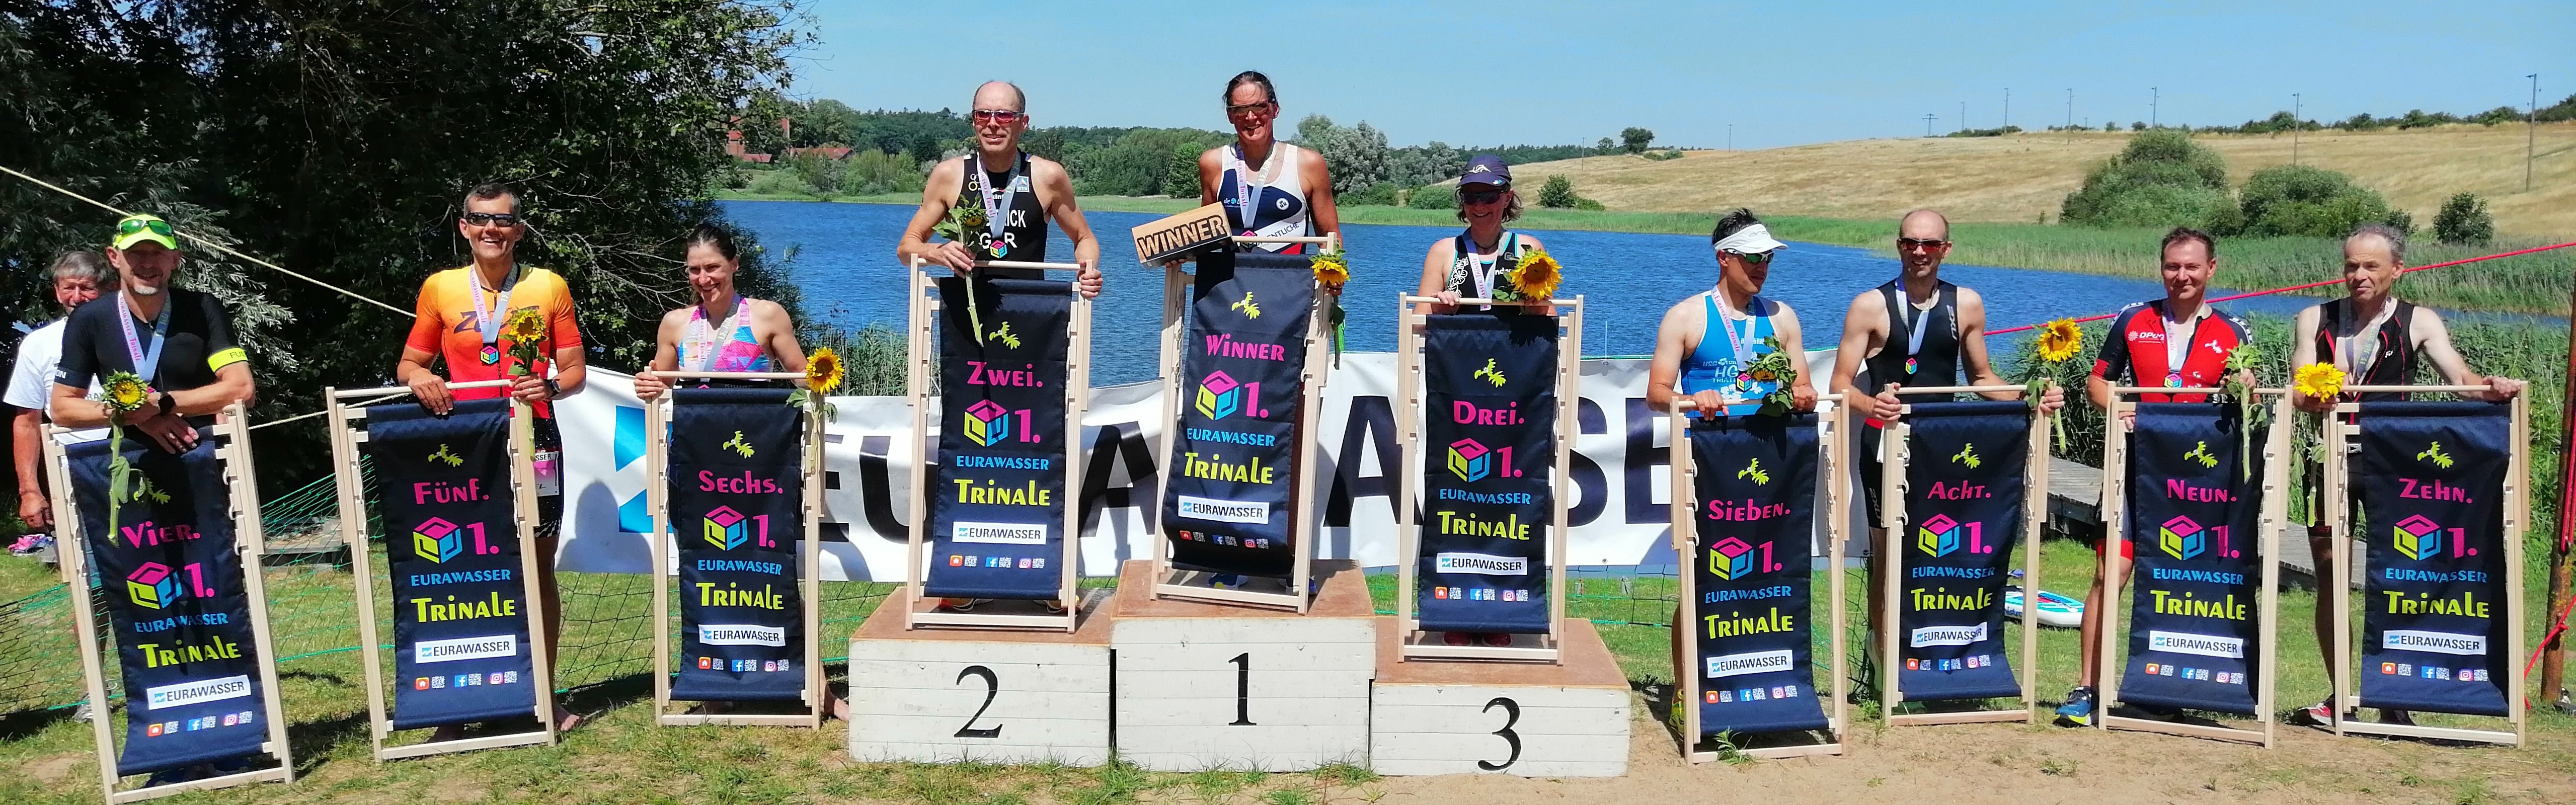 Triathlon: Liegestuhl statt Medaille beim 1. Eurawasser-Trinale in Boitin